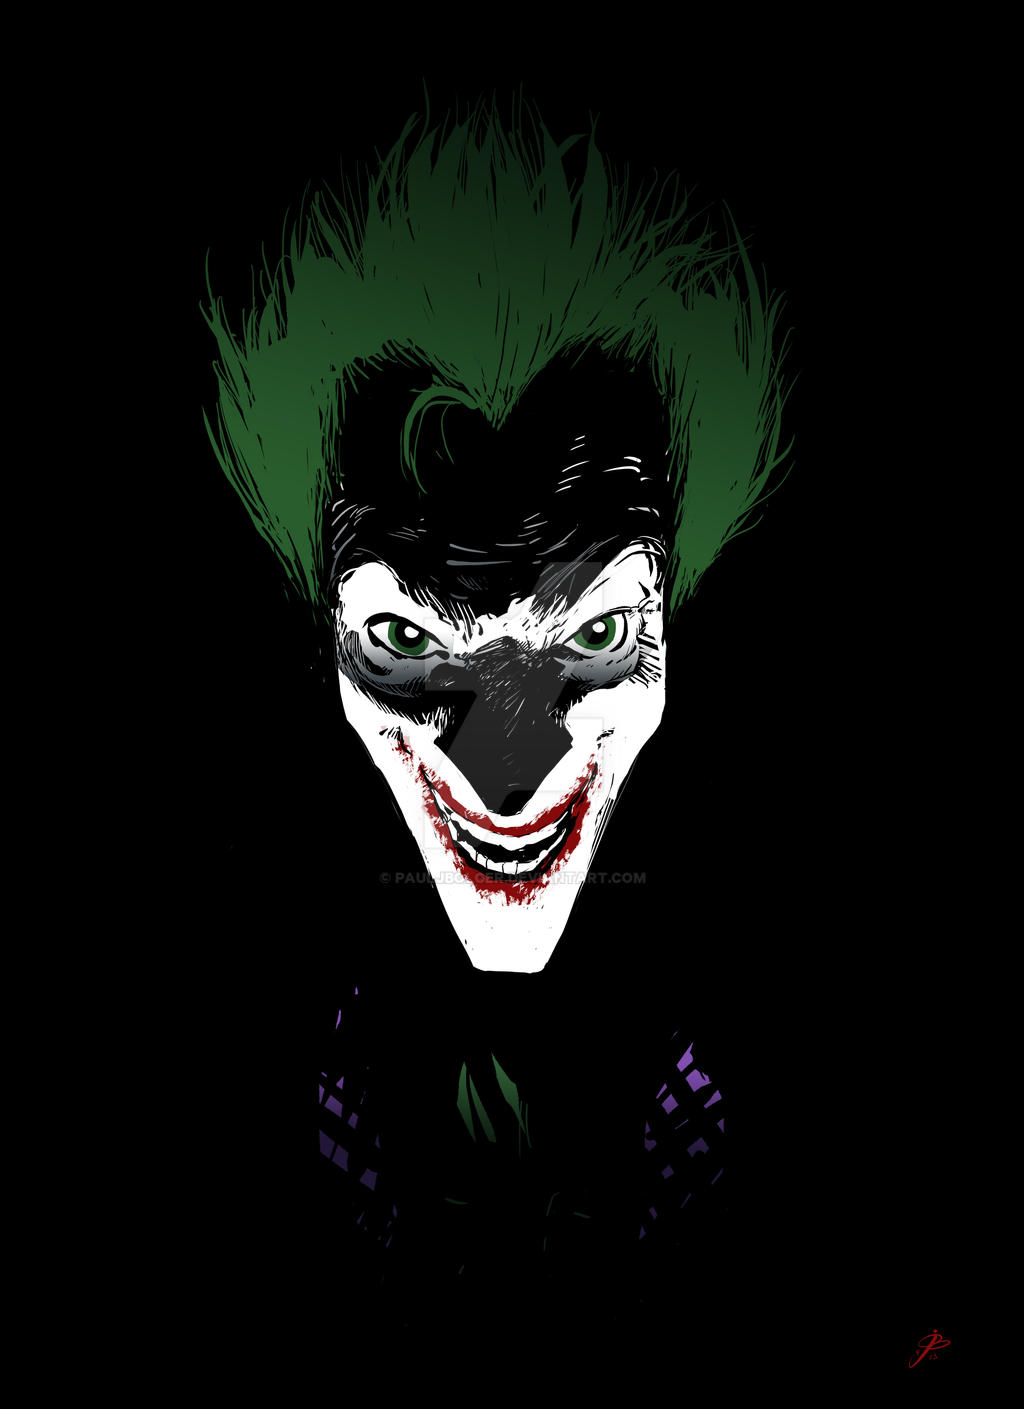 The Joker (has the last laugh) - colour by pauljbolger on DeviantArt